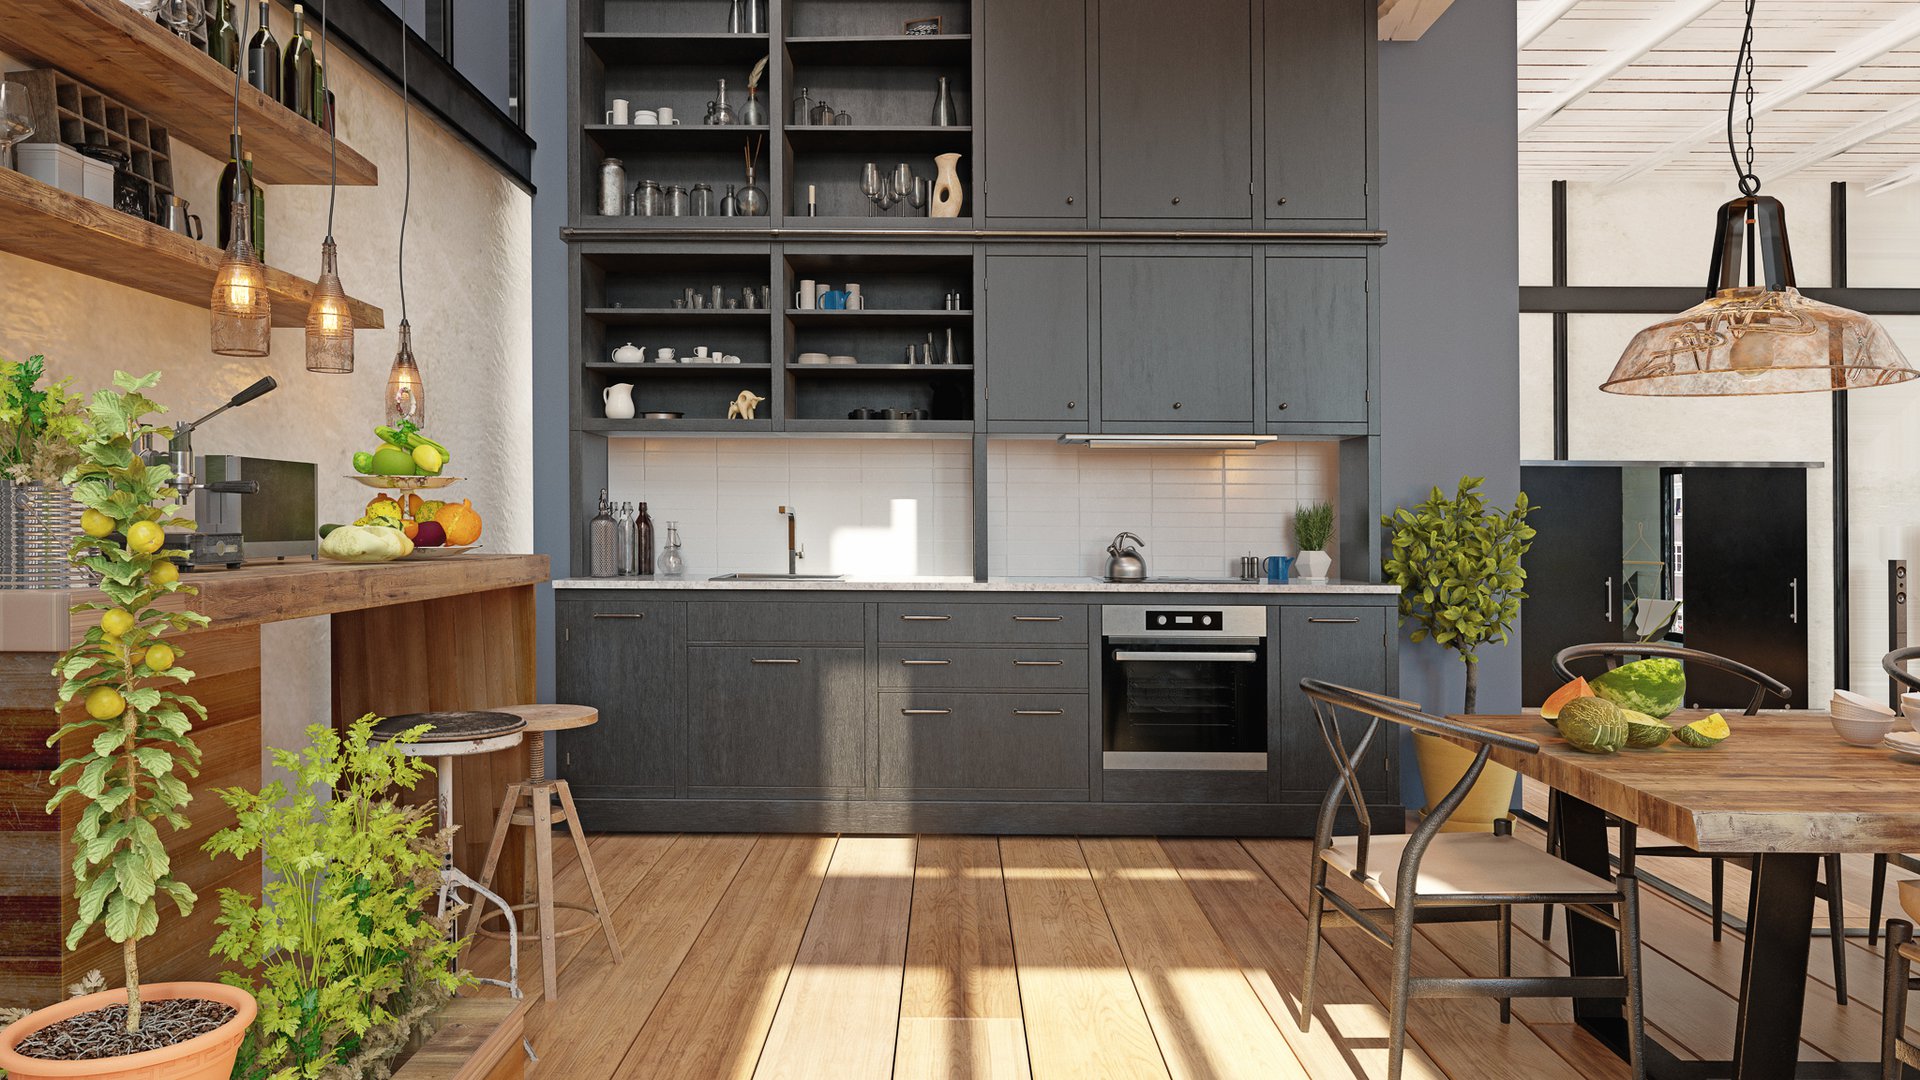 Kitchen with dark cabinets.jpg